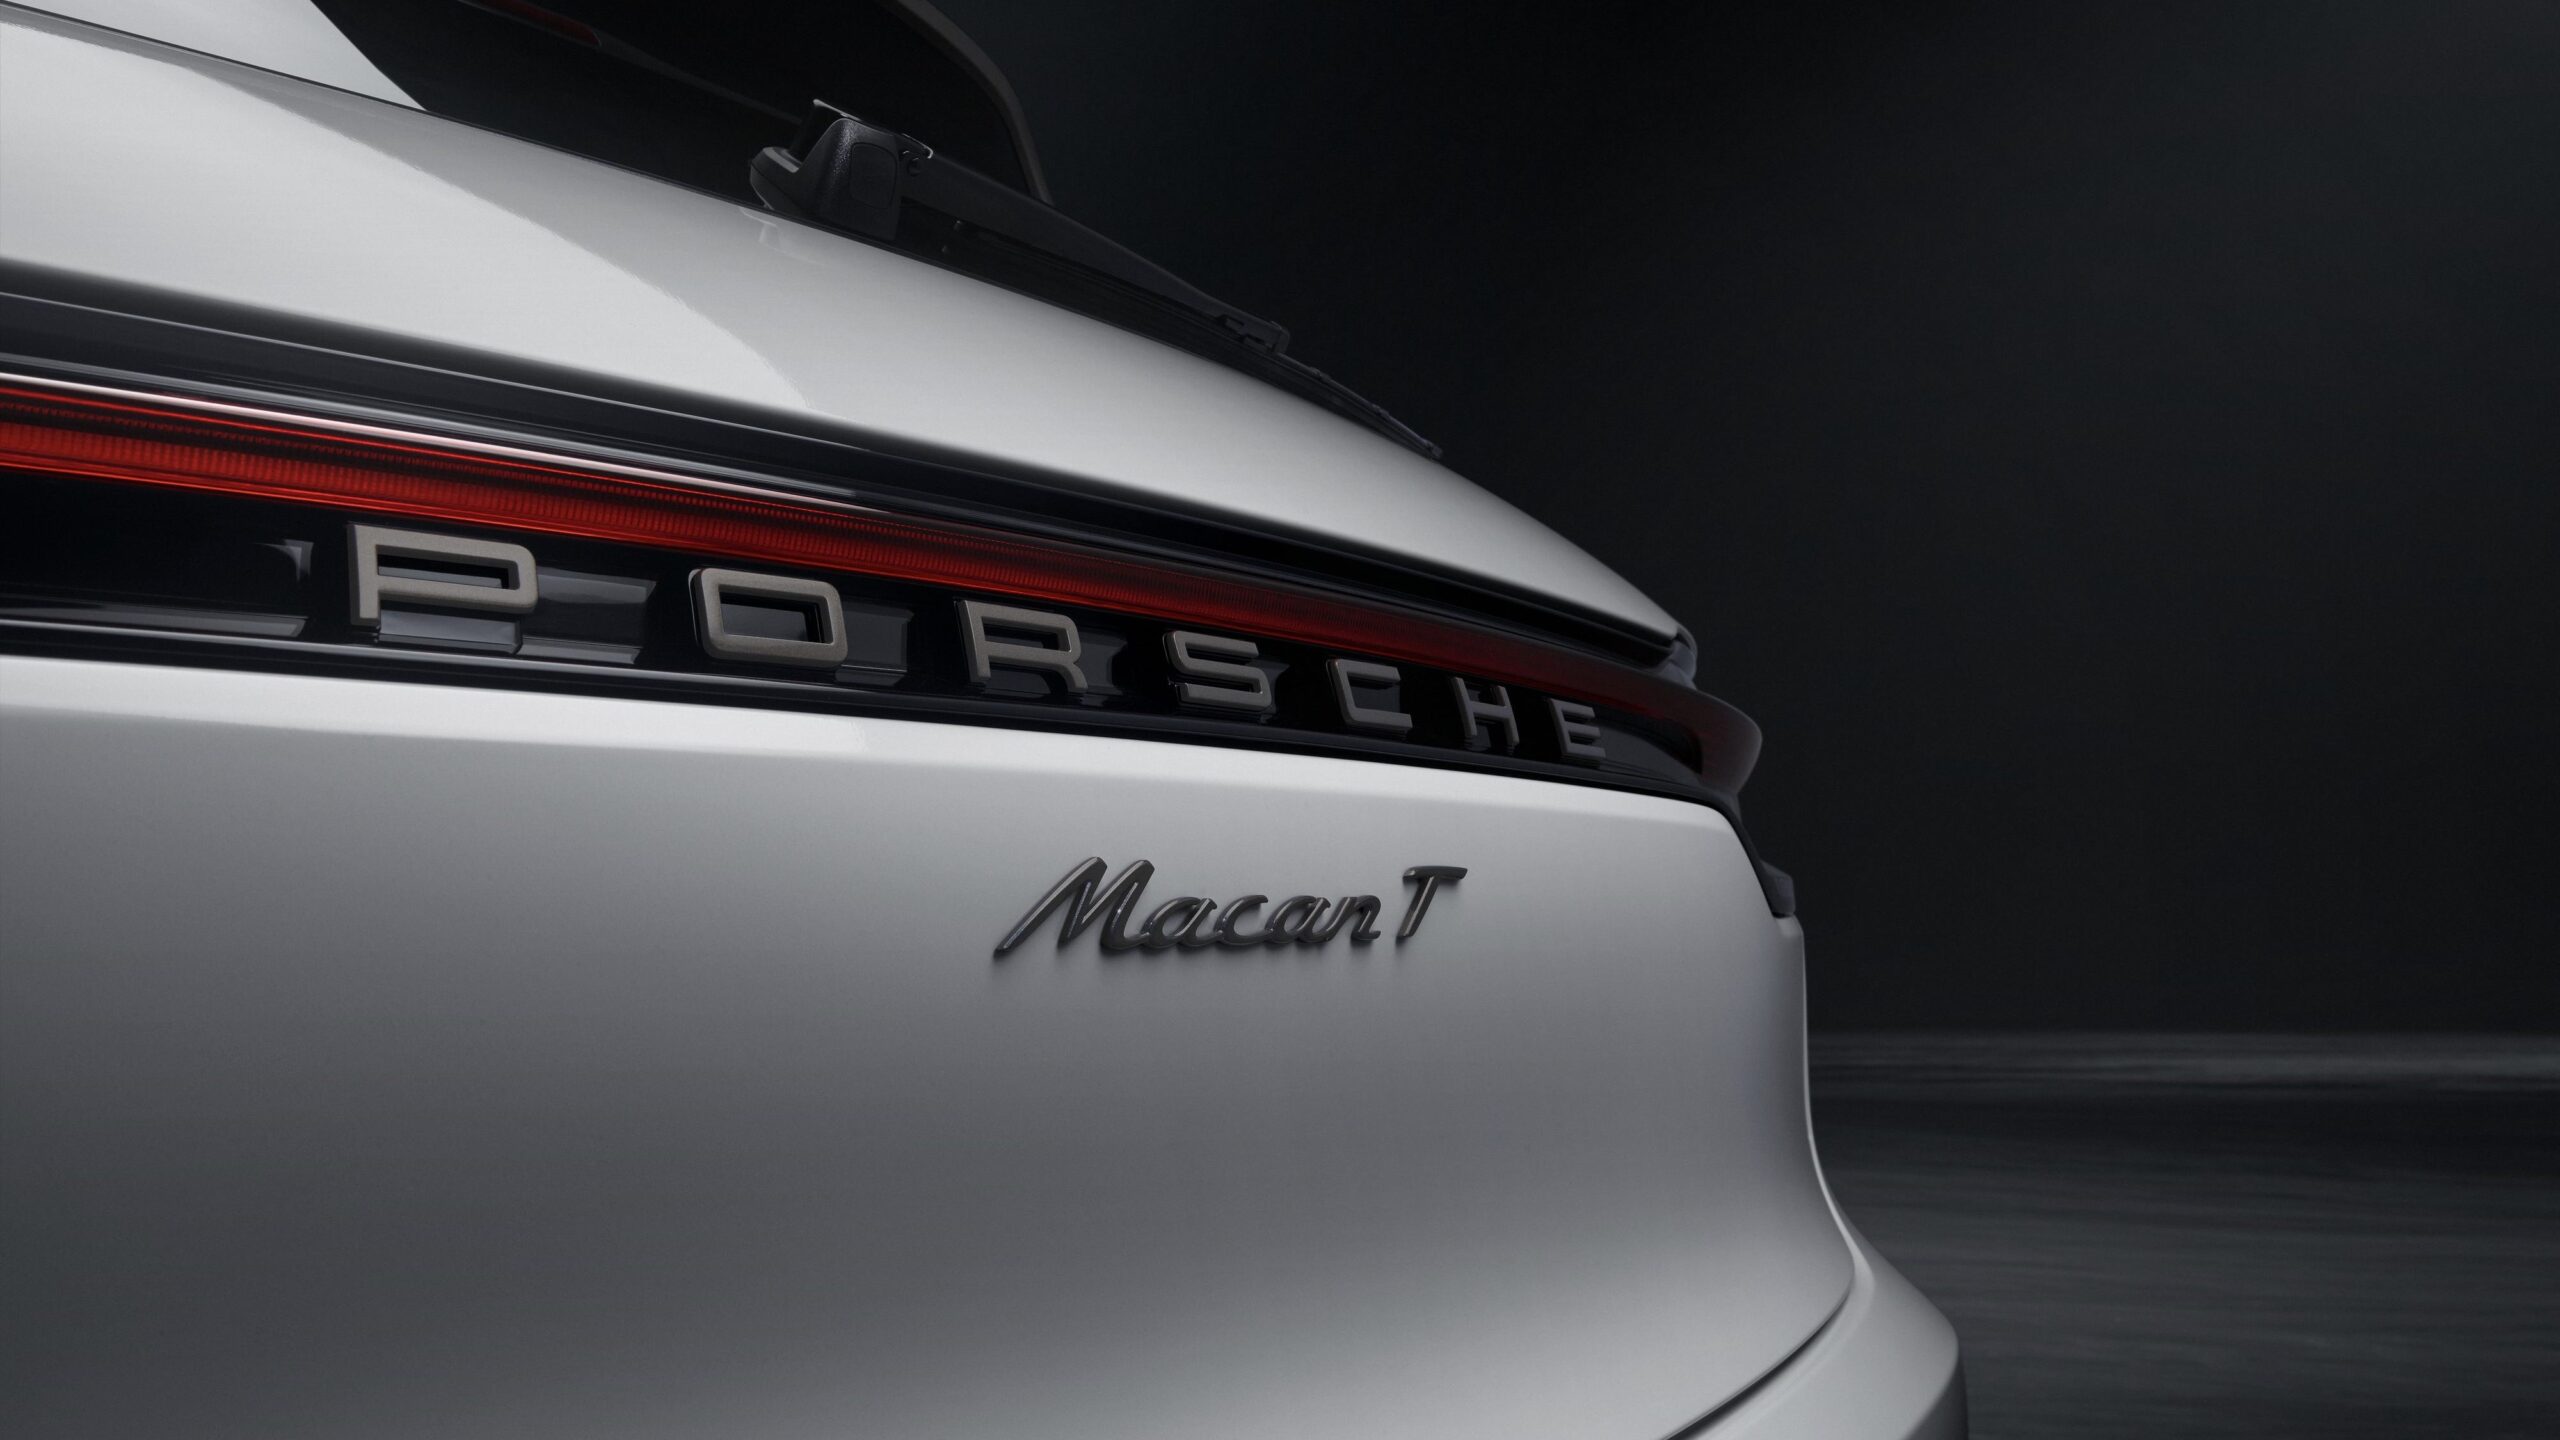 Porsche Macan T Rear Light Strip